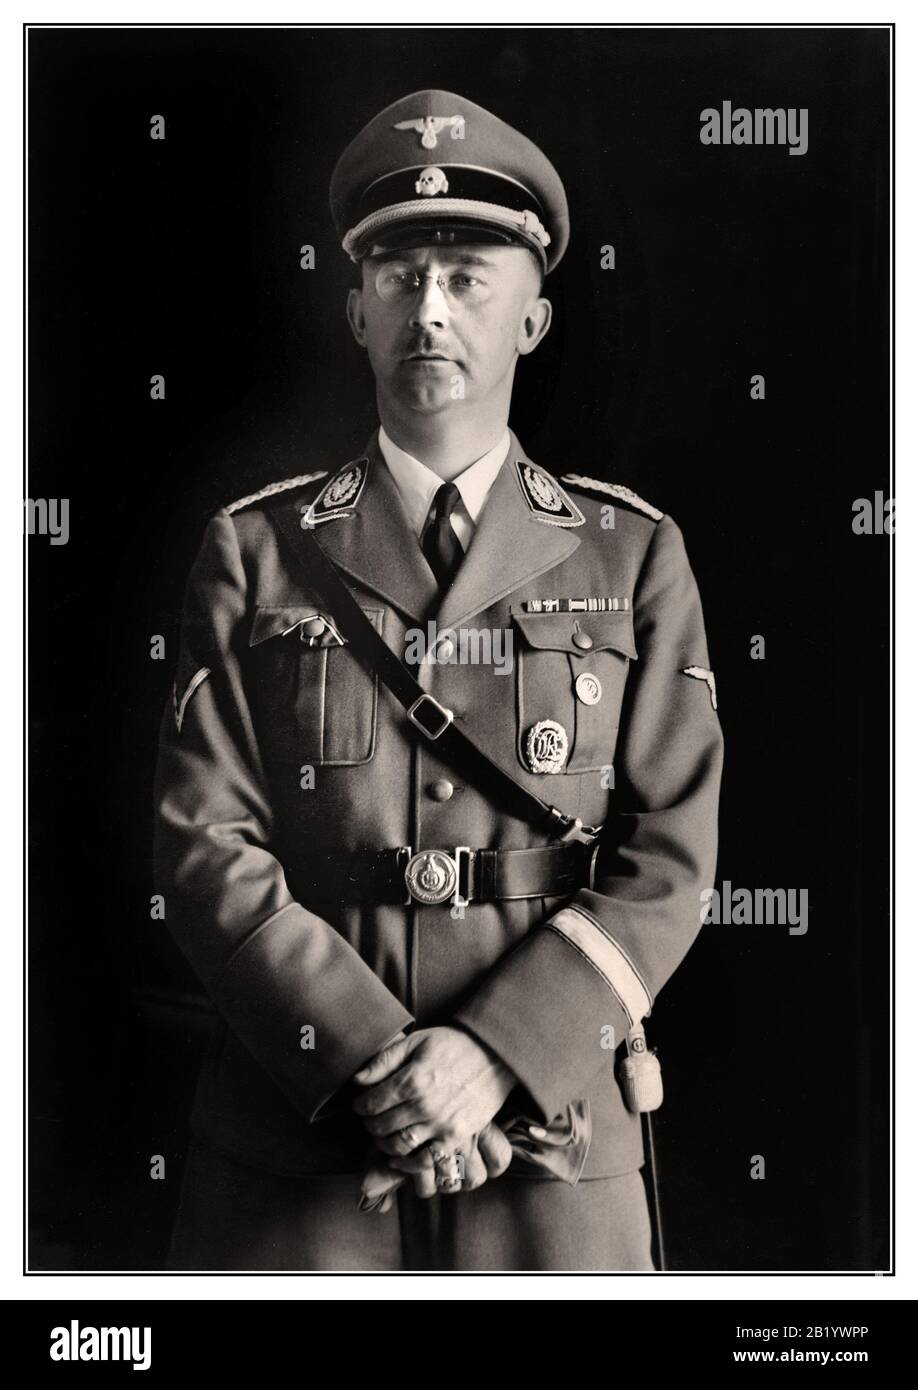 Heinrich Himmler Archivporträt 1940 Reichschef Heinrich Himmler, Polizeichef und SS im Dritten Reich. Porträtfoto anlässlich seines 40. Geburtstags. Heinrich Luitpold Himmler war Reichschef der Schutzstaffel und führendes Mitglied der Reichspartei Deutschlands. Himmler war einer der mächtigsten Männer im Nazi-Deutschland und ein Hauptarchitekt des Holocausts. Zweifellos schuldig an Kriegsverbrechen gegen die Menschlichkeit, beging Selbstmord, während er in Untersuchungshaft war und auf den Prozess wartet. Stockfoto